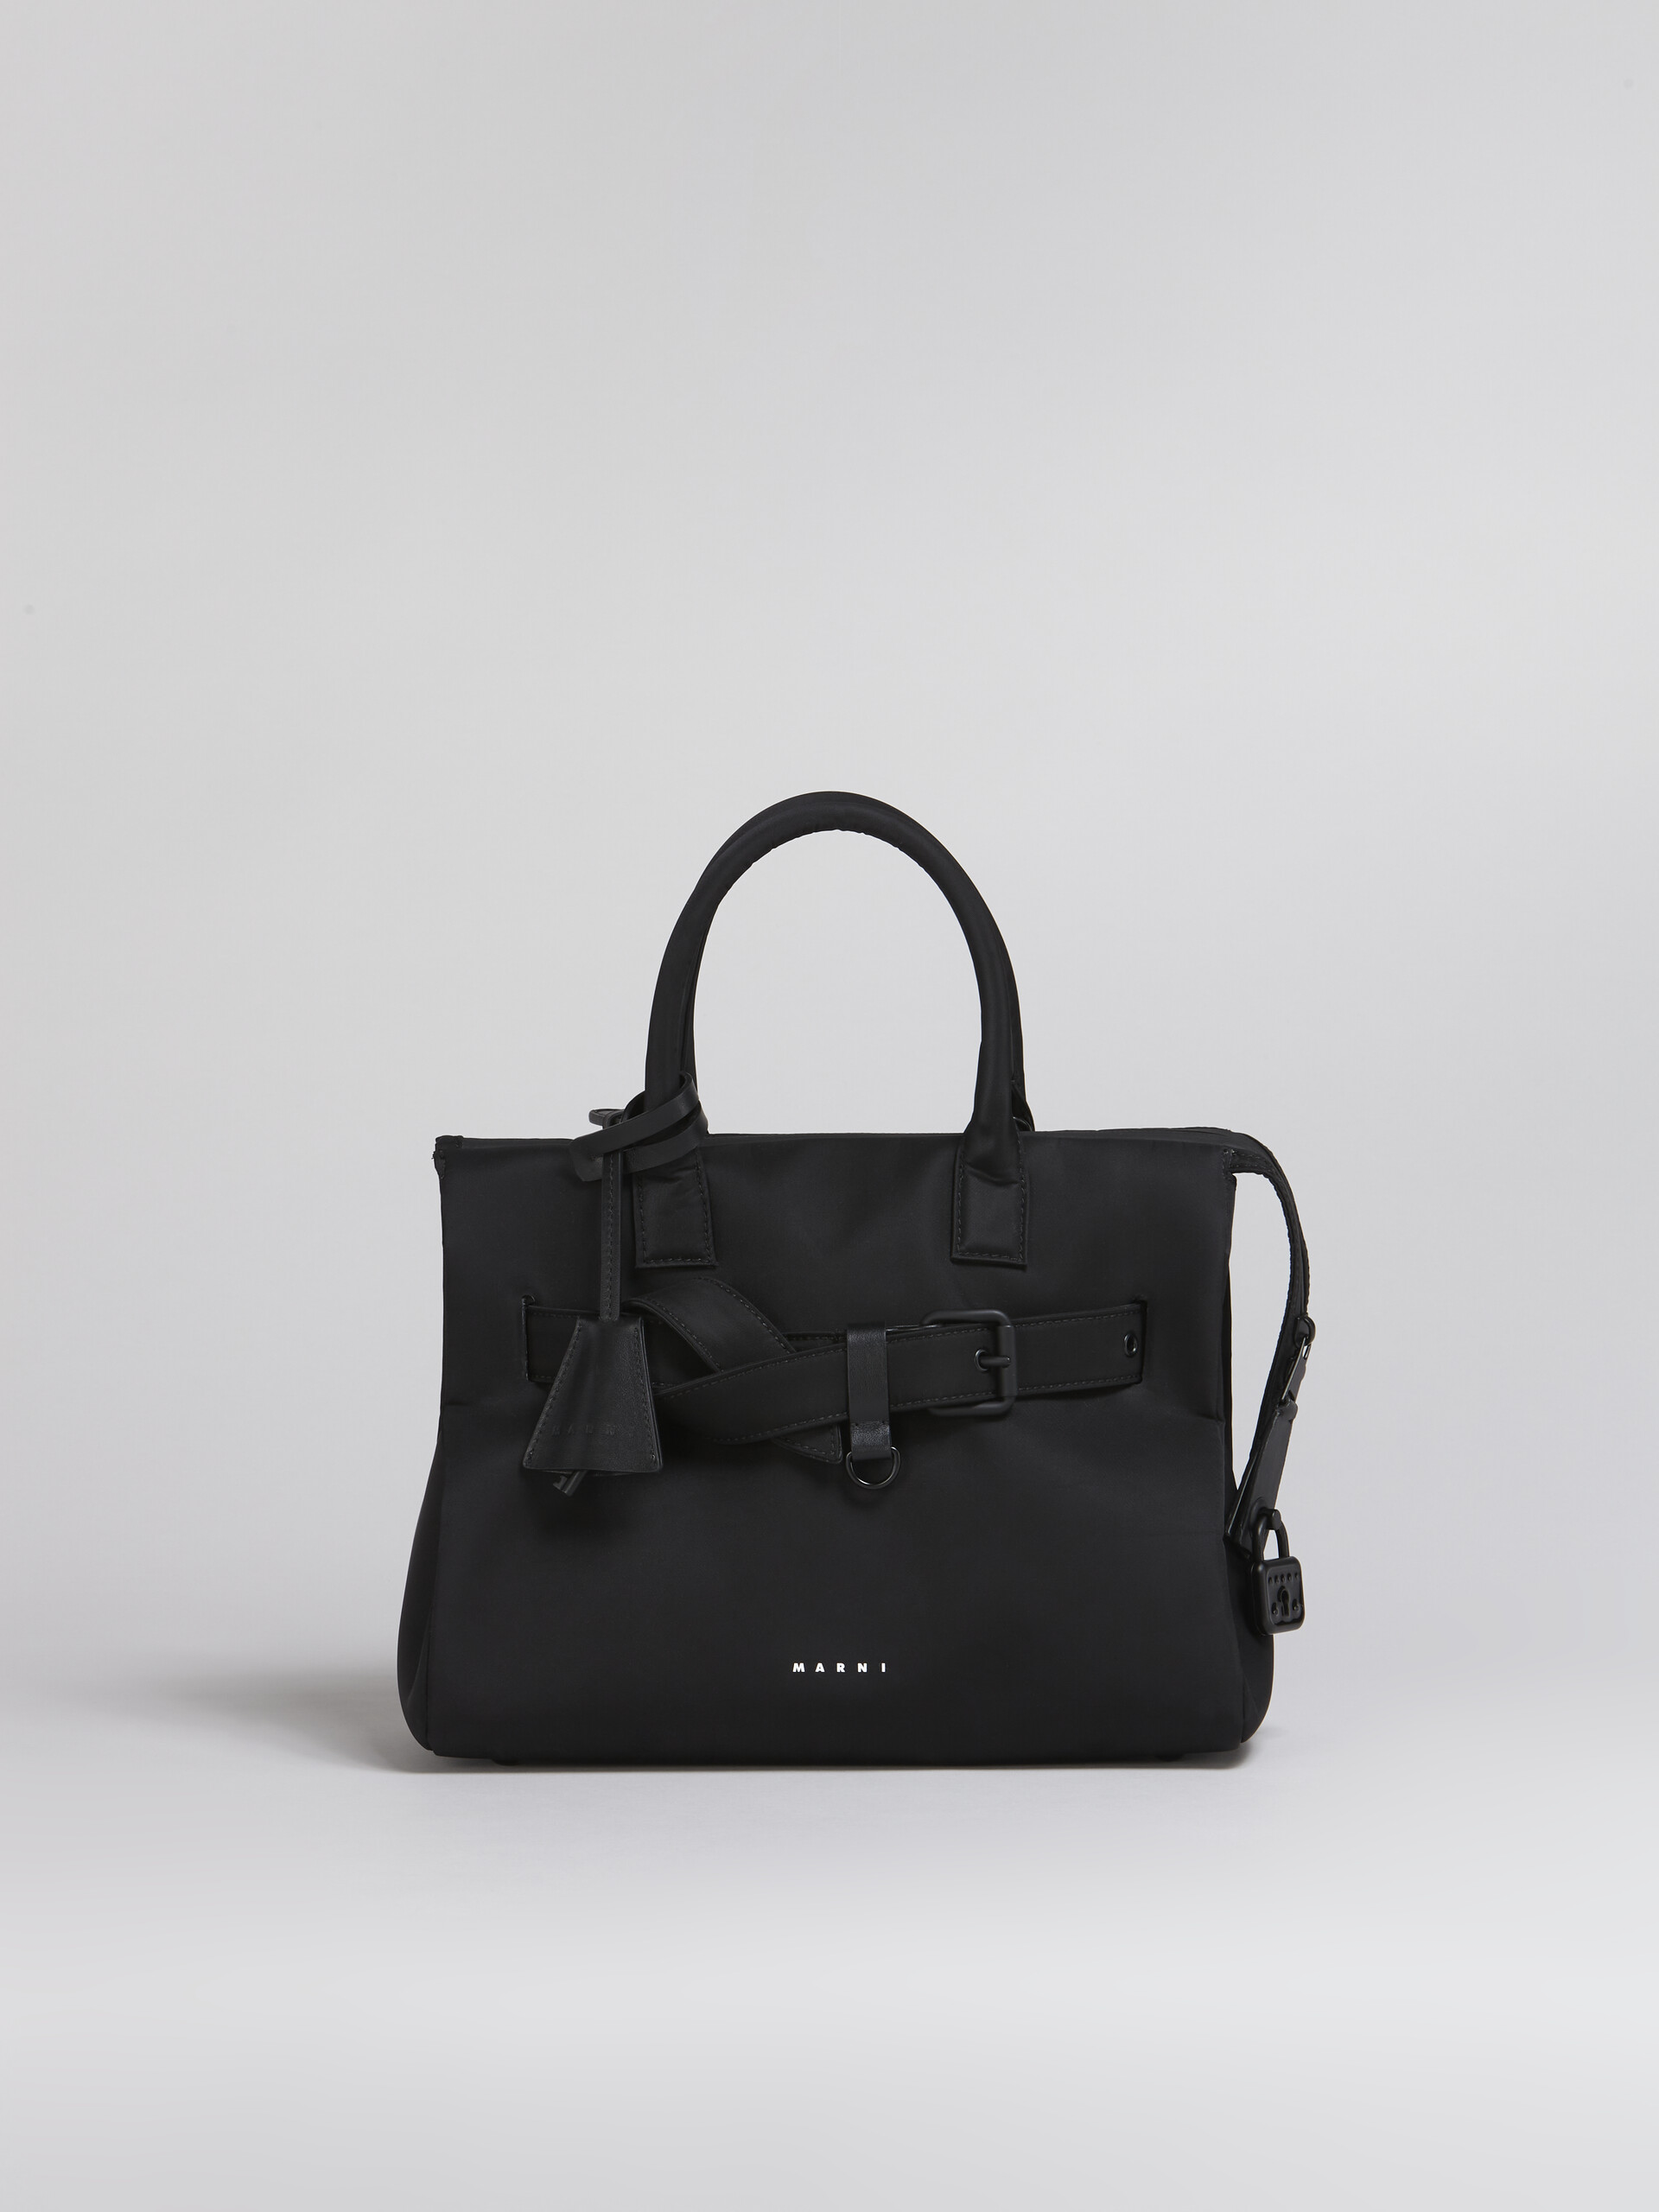 Black nylon TREASURE bag - Handbag - Image 1